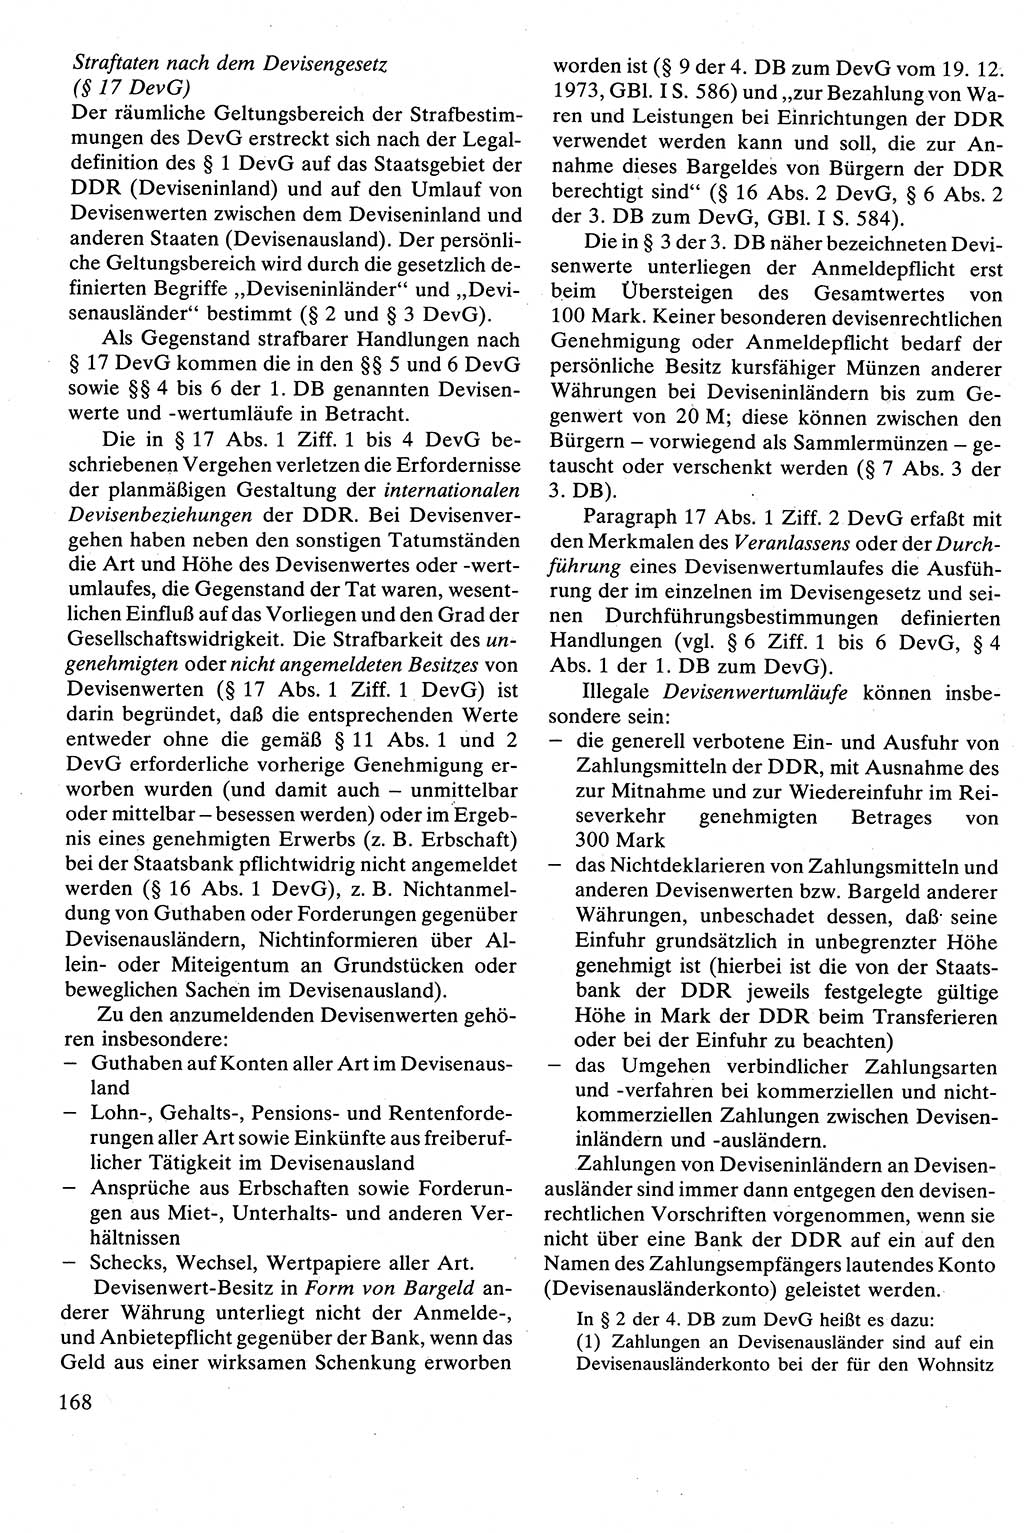 Strafrecht [Deutsche Demokratische Republik (DDR)], Besonderer Teil, Lehrbuch 1981, Seite 168 (Strafr. DDR BT Lb. 1981, S. 168)